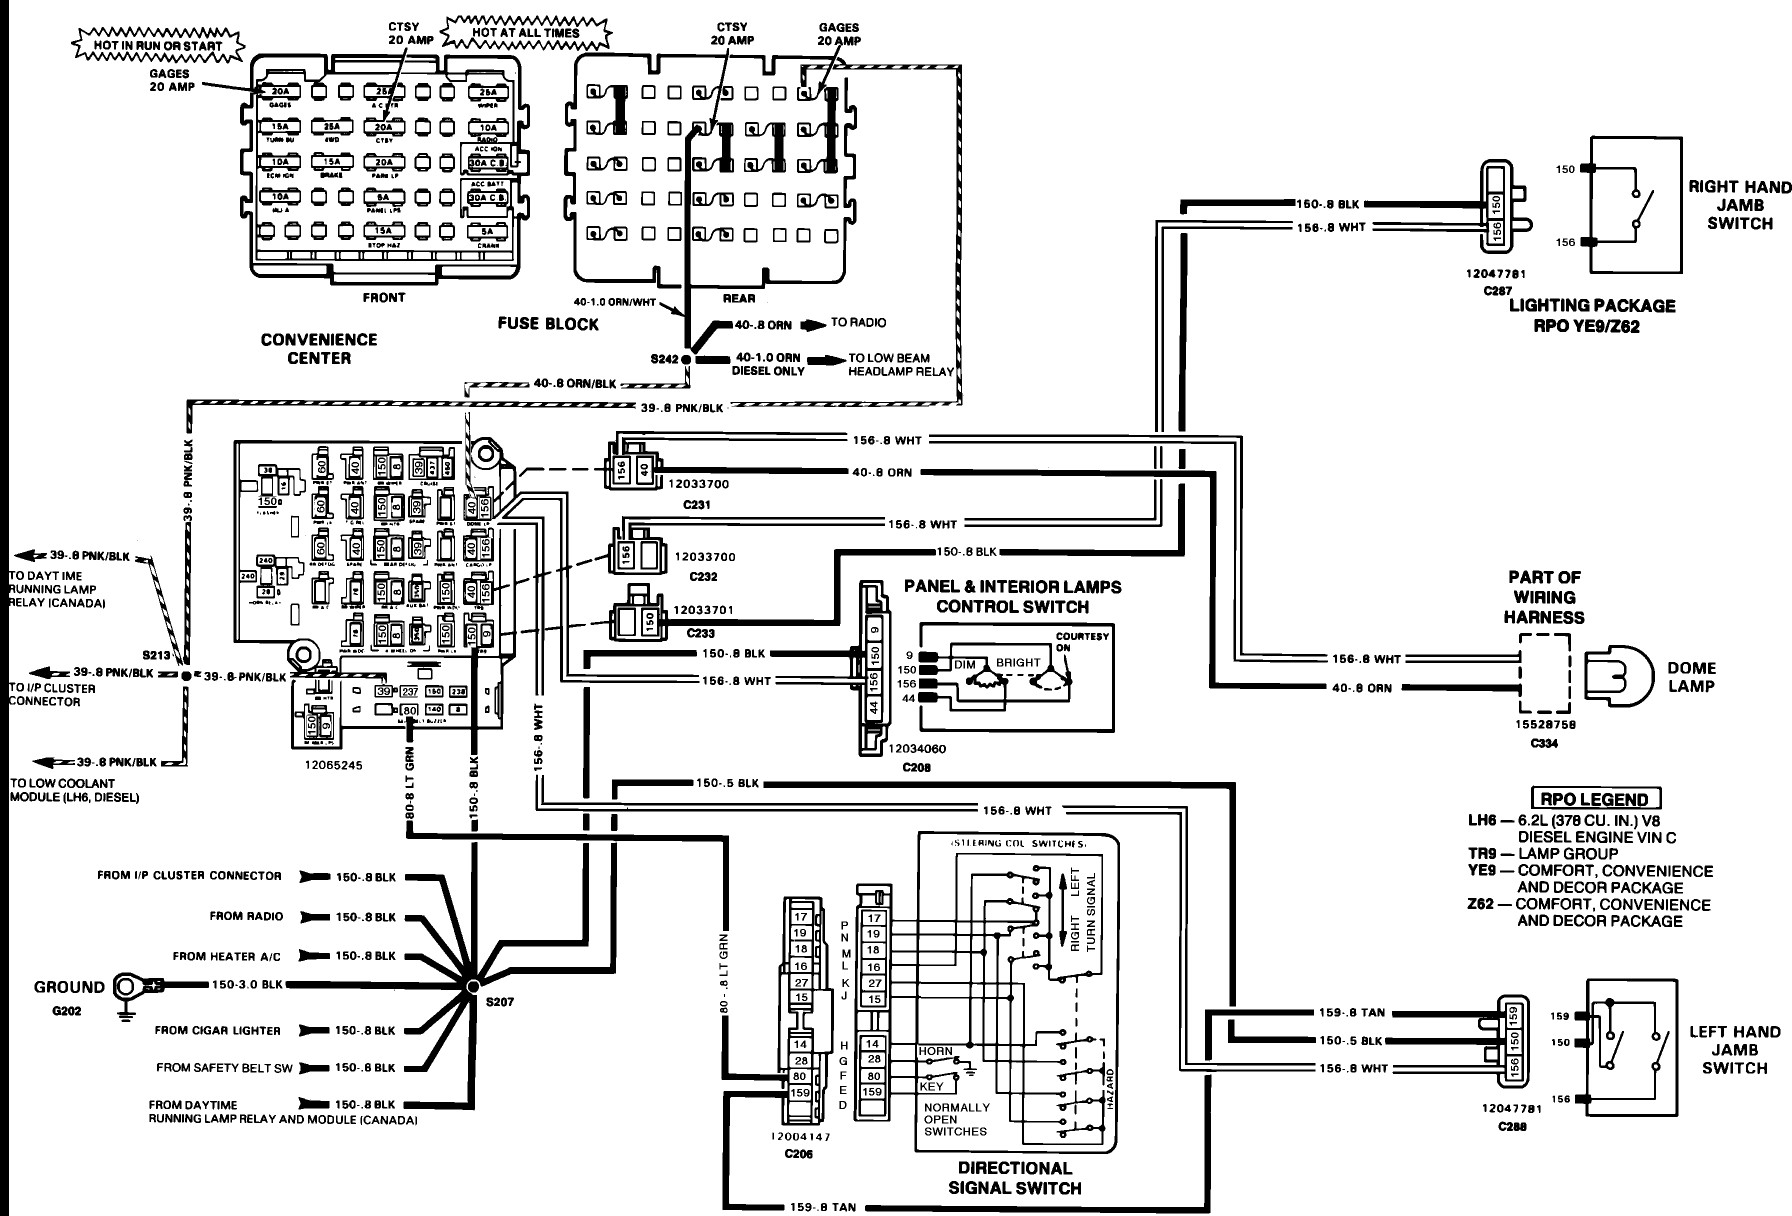 Passkey 3 Bypass Diagram 1991 Camaro Vats Wiring Diagram Schematic Wiring Diagram Site